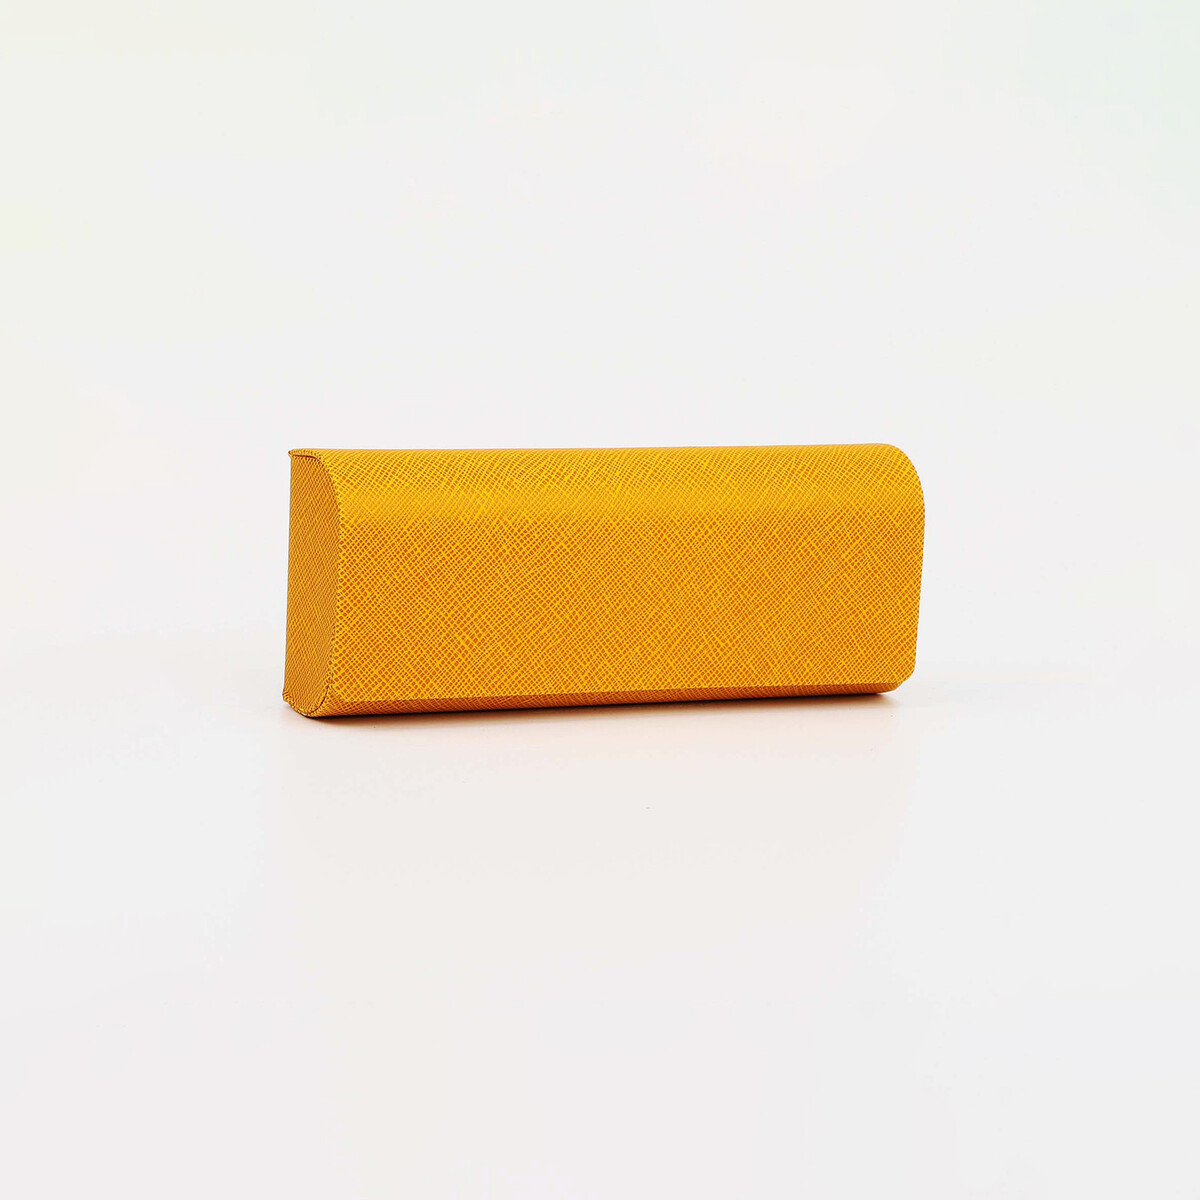 Футляр для очков на магните, 15.5 см х 3 см х 6 см, салфетка, цвет желтый салфетка круглая 32 см 12шт уп желтый градиент